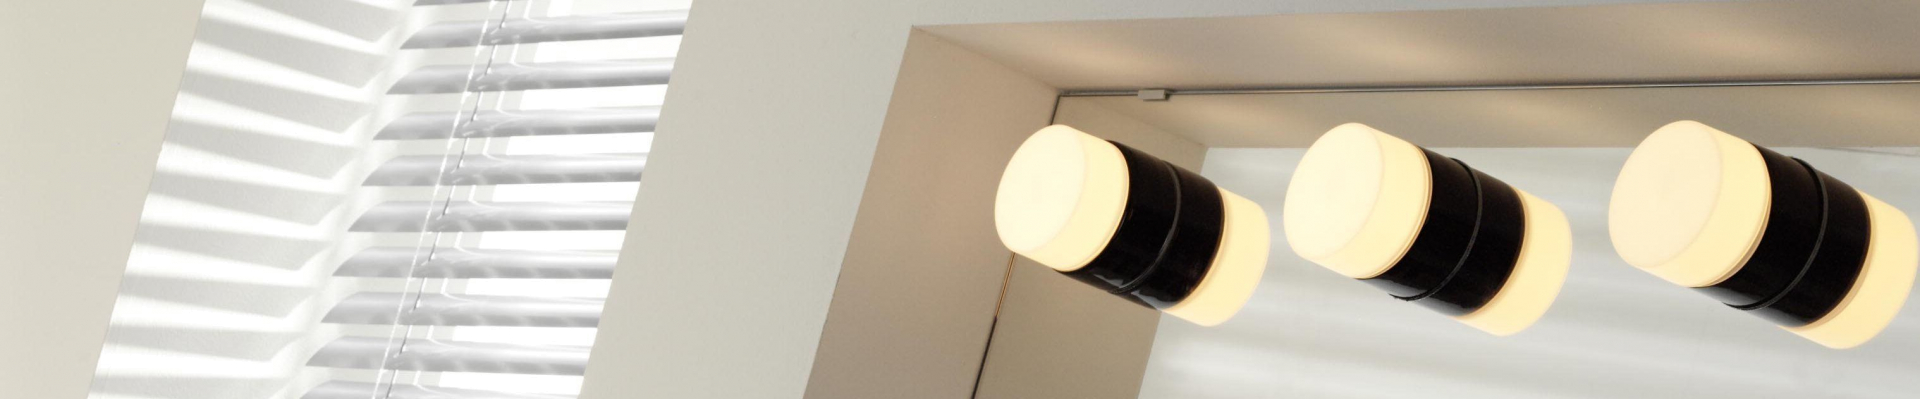 Merg Aanvankelijk huiselijk Design badkamerlampen | Badkamerlamp kopen? | Flinders